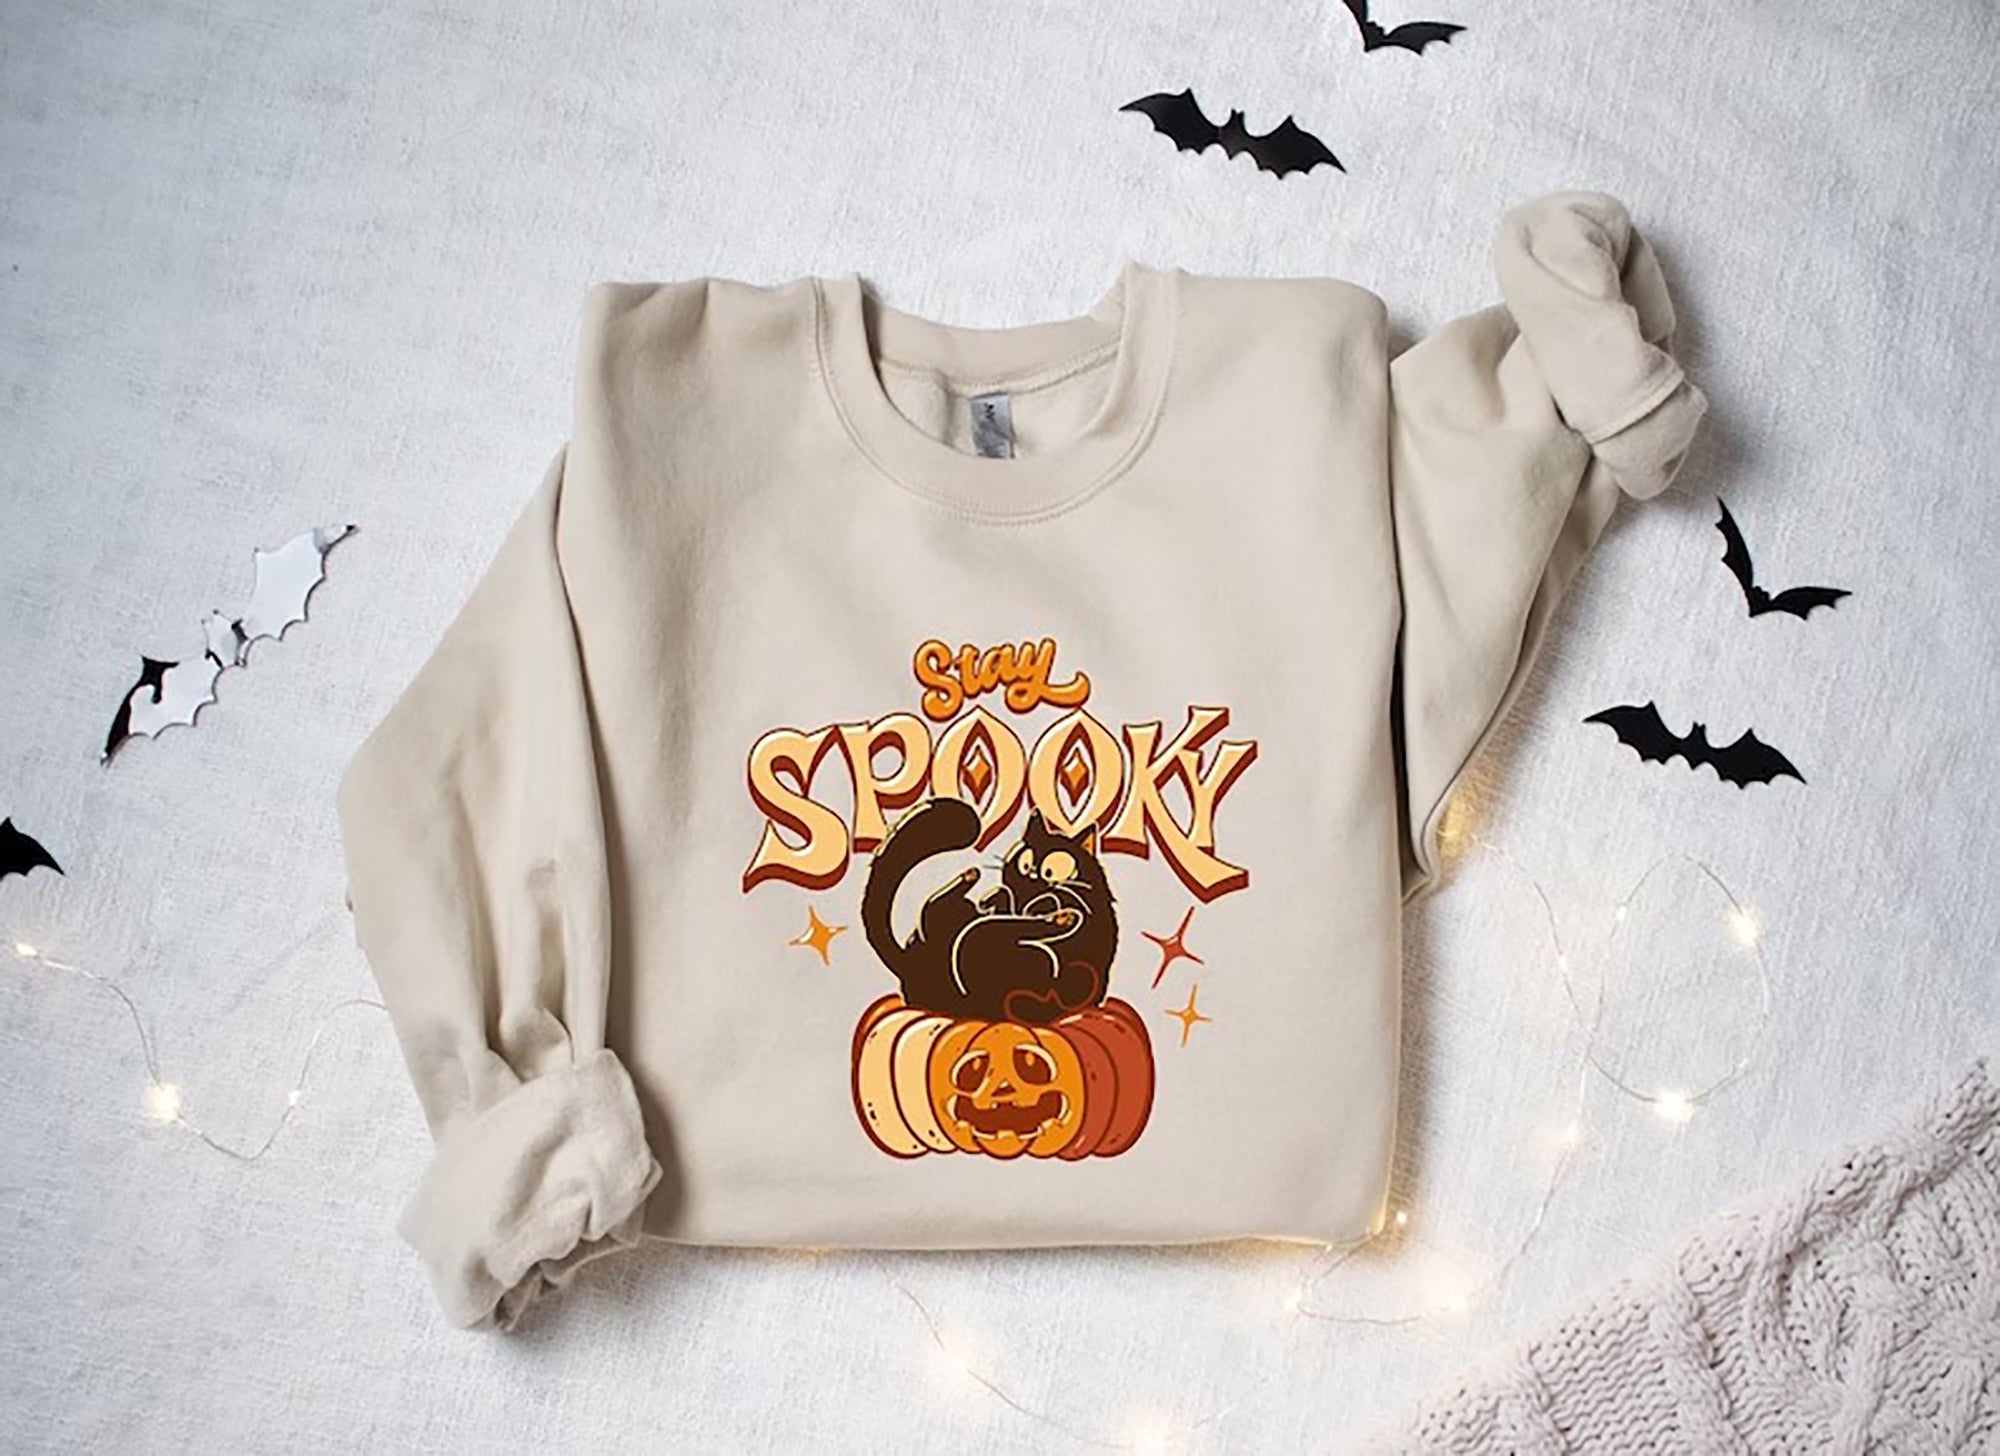 Skitongift Stay Spooky T-Shirt,Spooky Season Shirt,Ghost Halloween,Halloween Gift Shirt,Womens Halloween T-Shirt